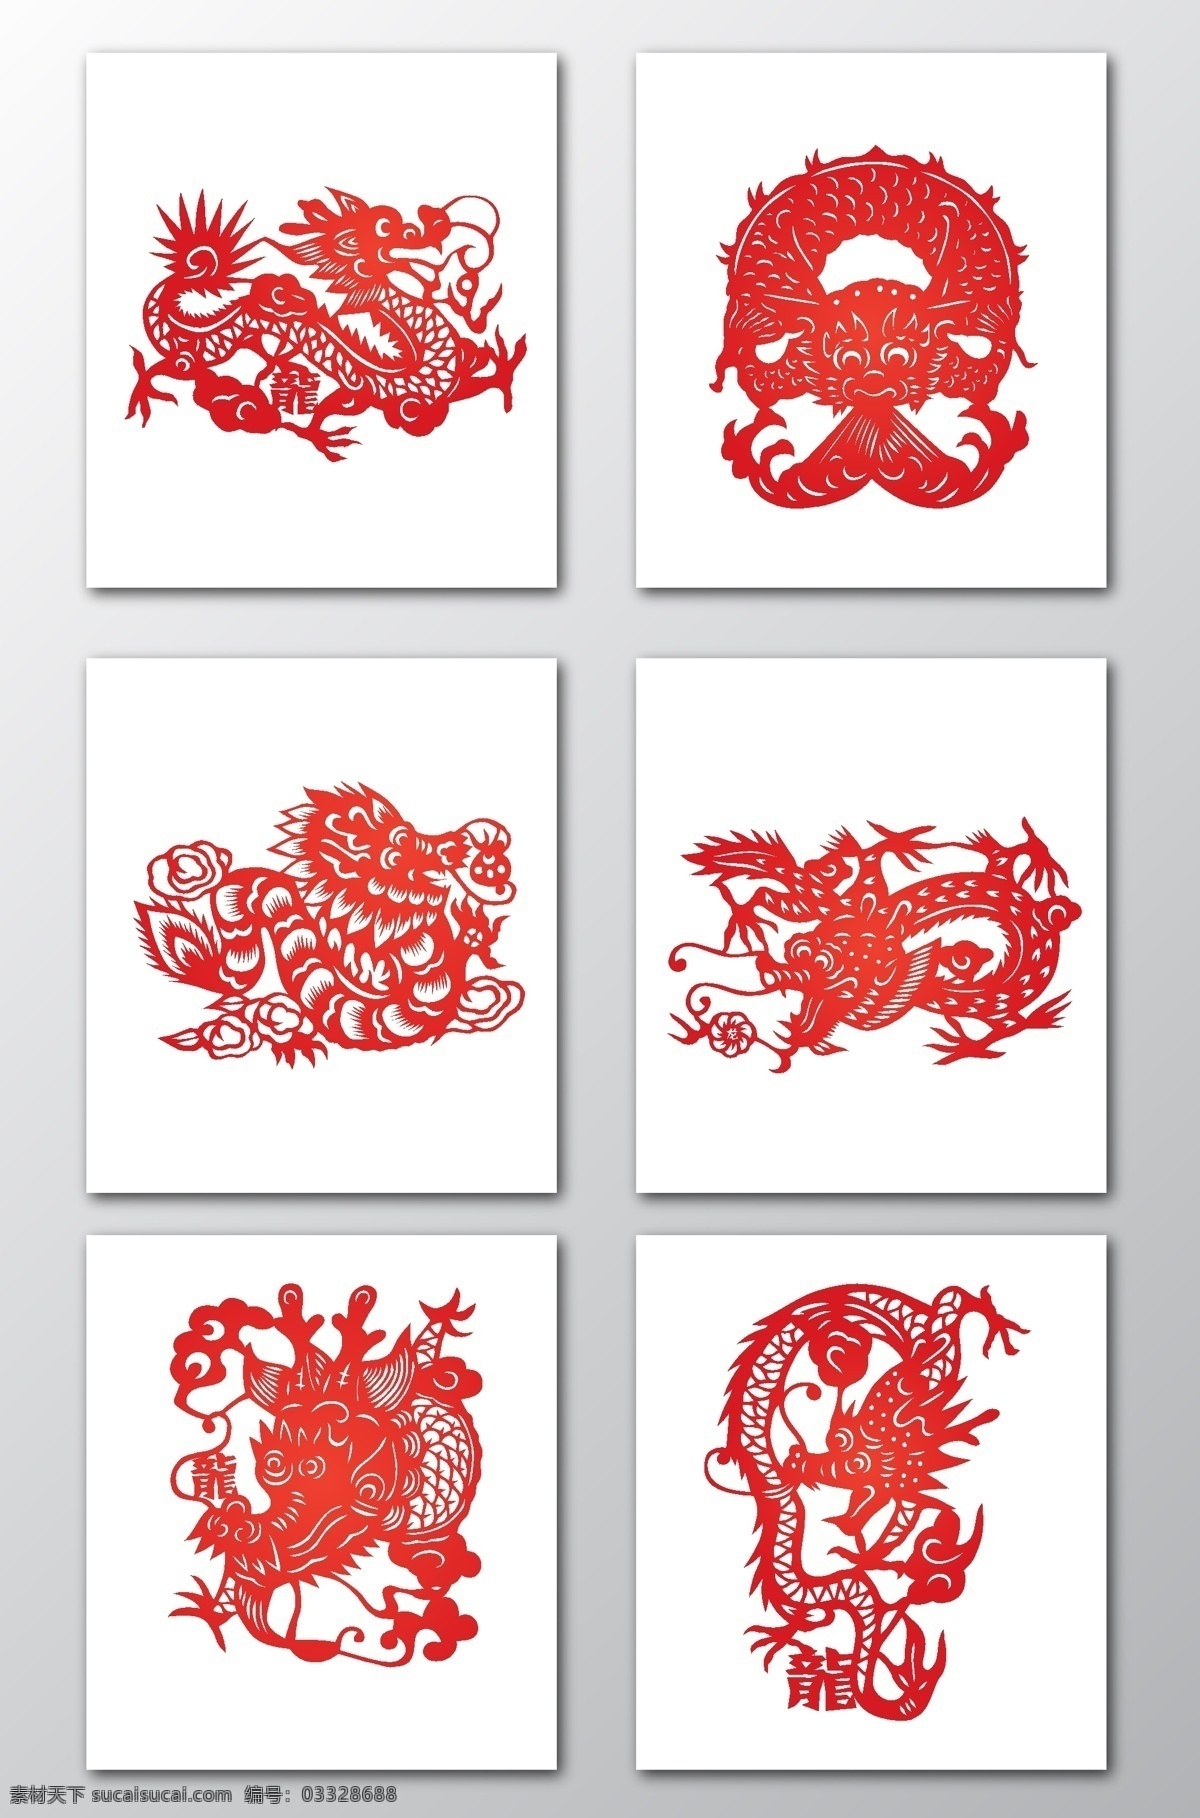 中国 风 剪纸 龙 矢量 中国风 红色剪纸 红色龙 剪纸龙 龙素材 中国风素材 过年素材 分层